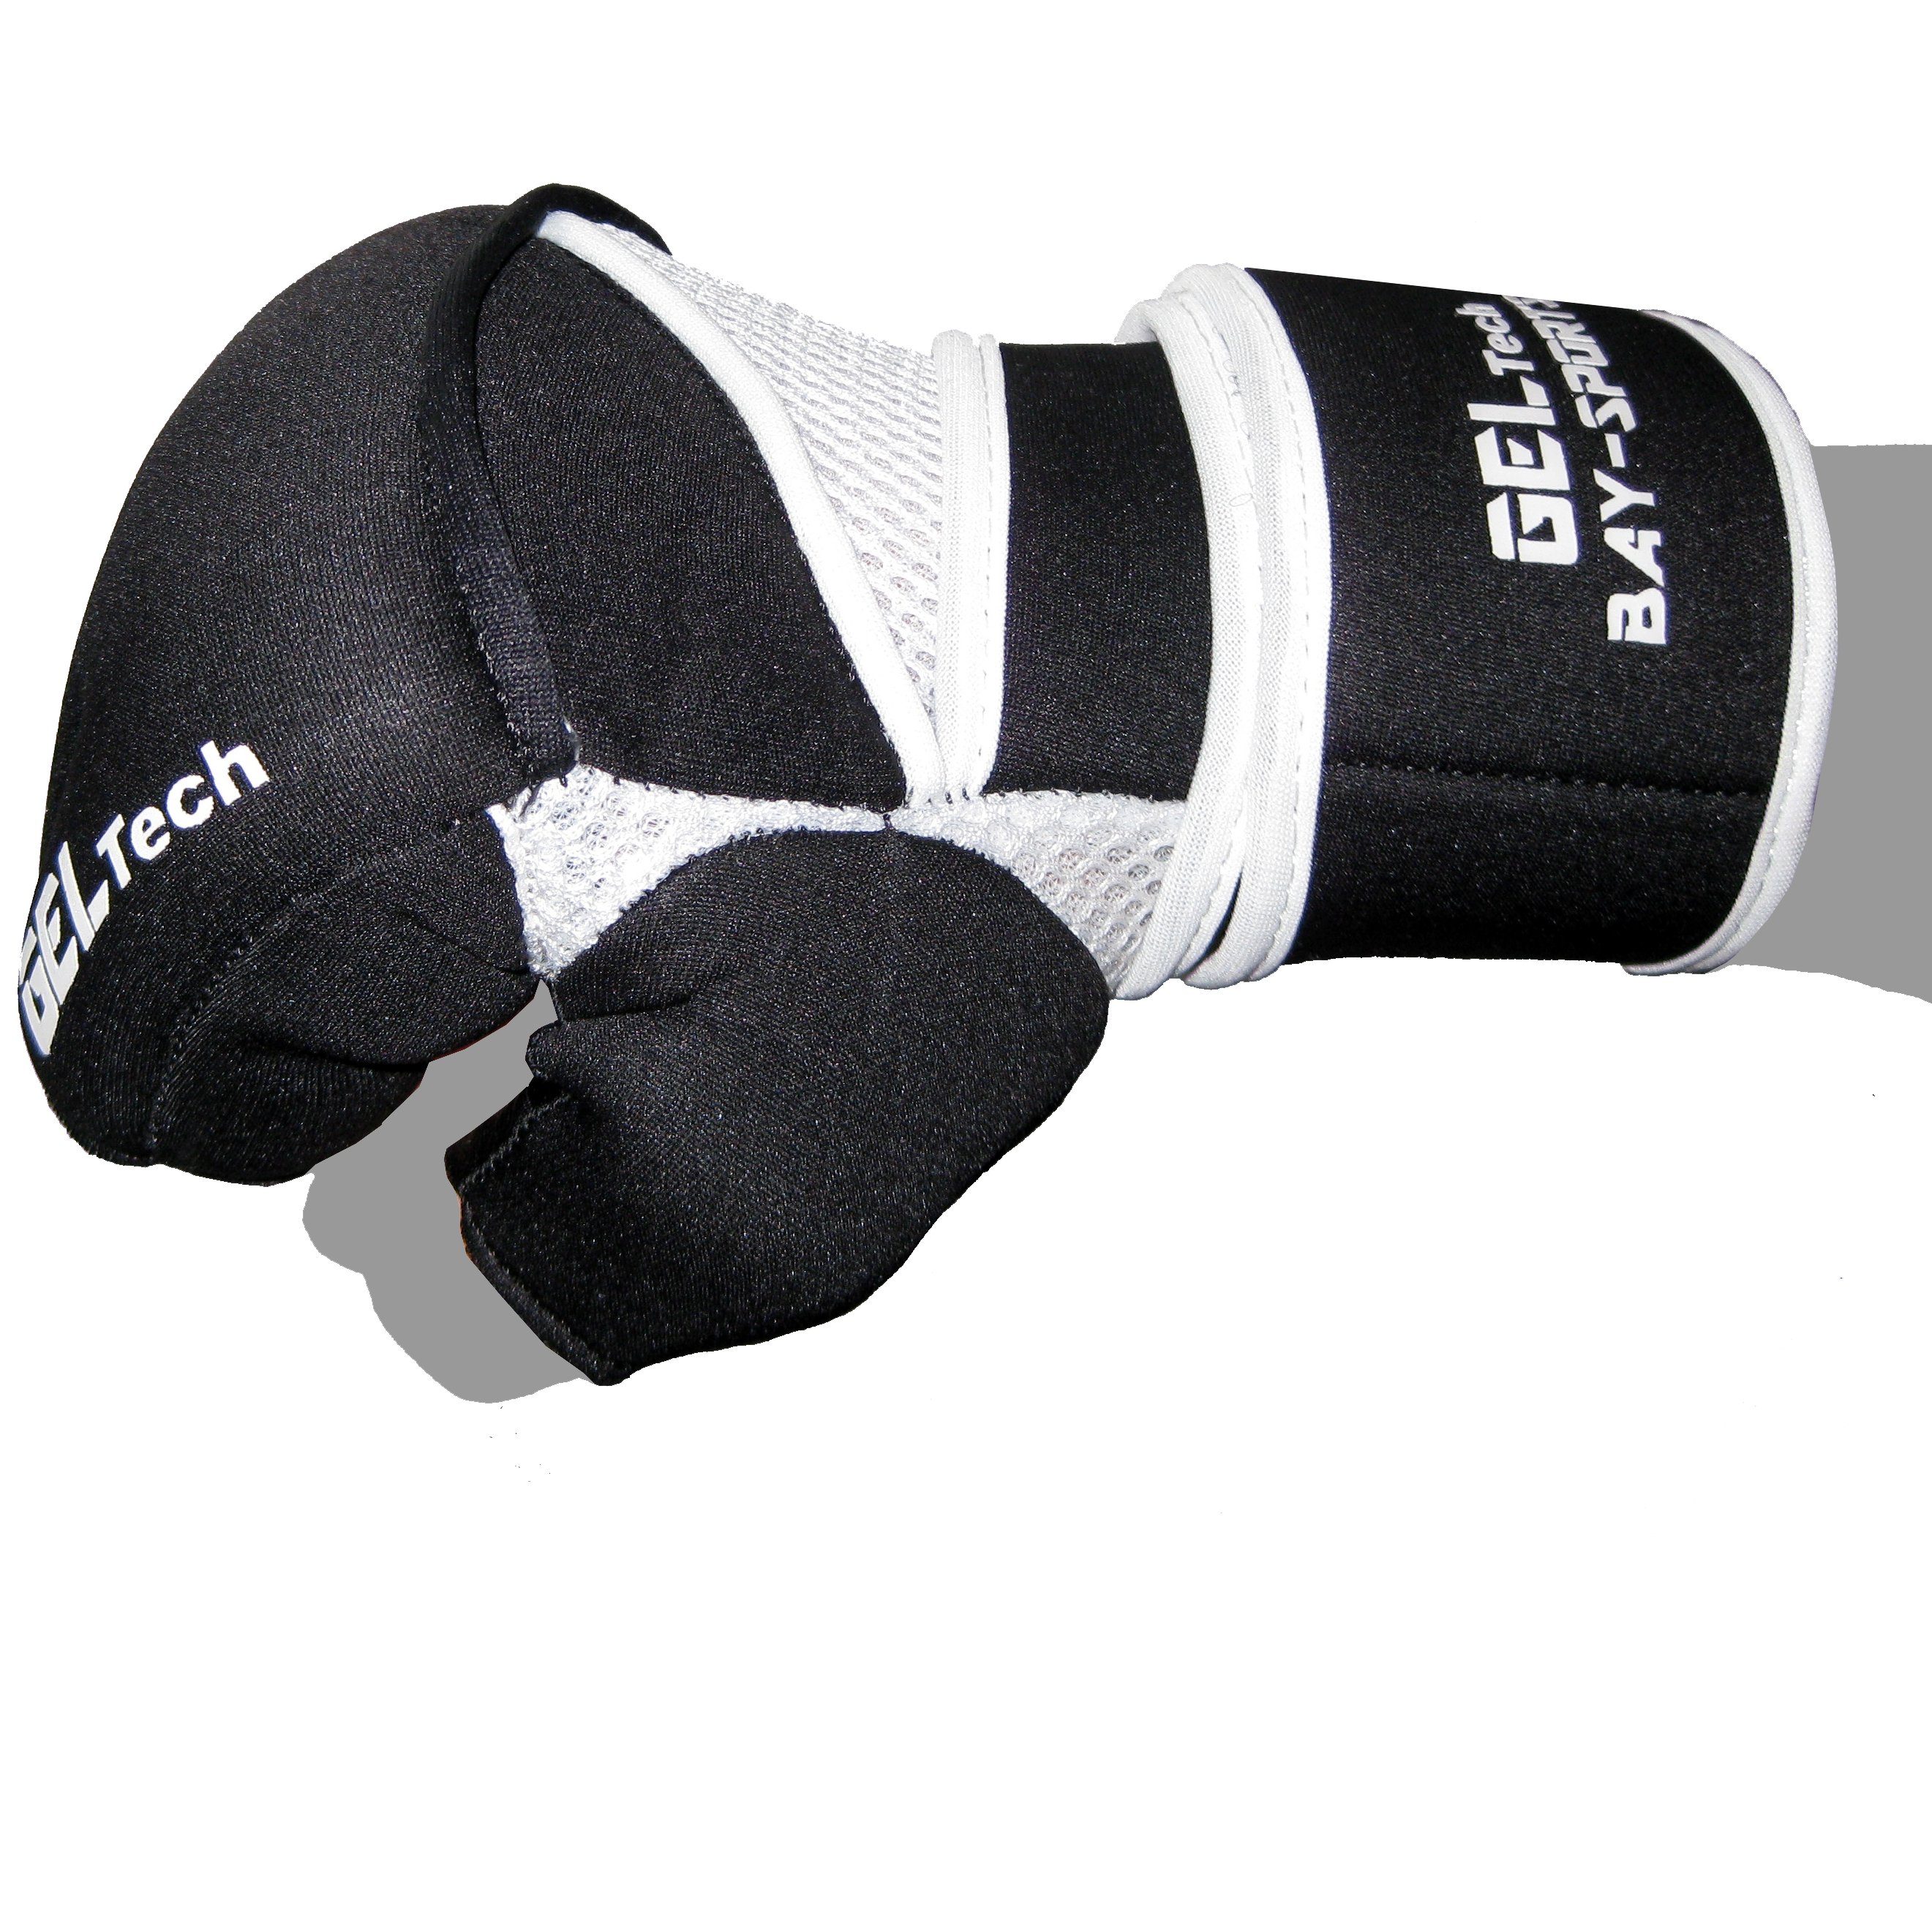 BAY-Sports MMA-Handschuhe Winsome Kinder XS - Maga Handschützer Erwachsene Boxsack, Krav Handschutz XL Neopren und